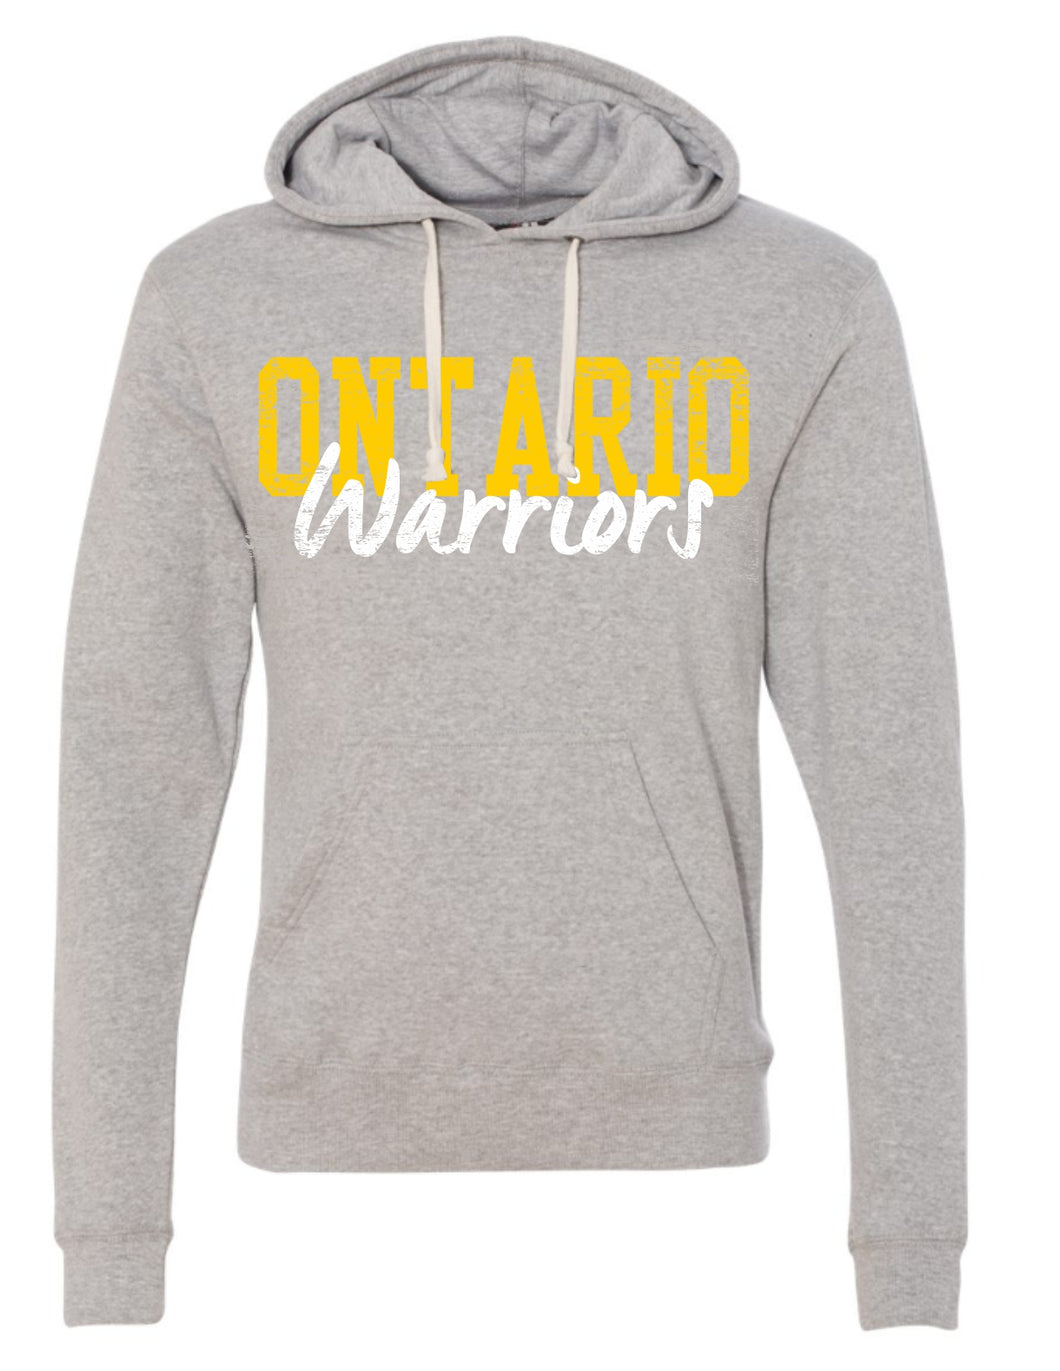 Ontario Warriors Hoodie